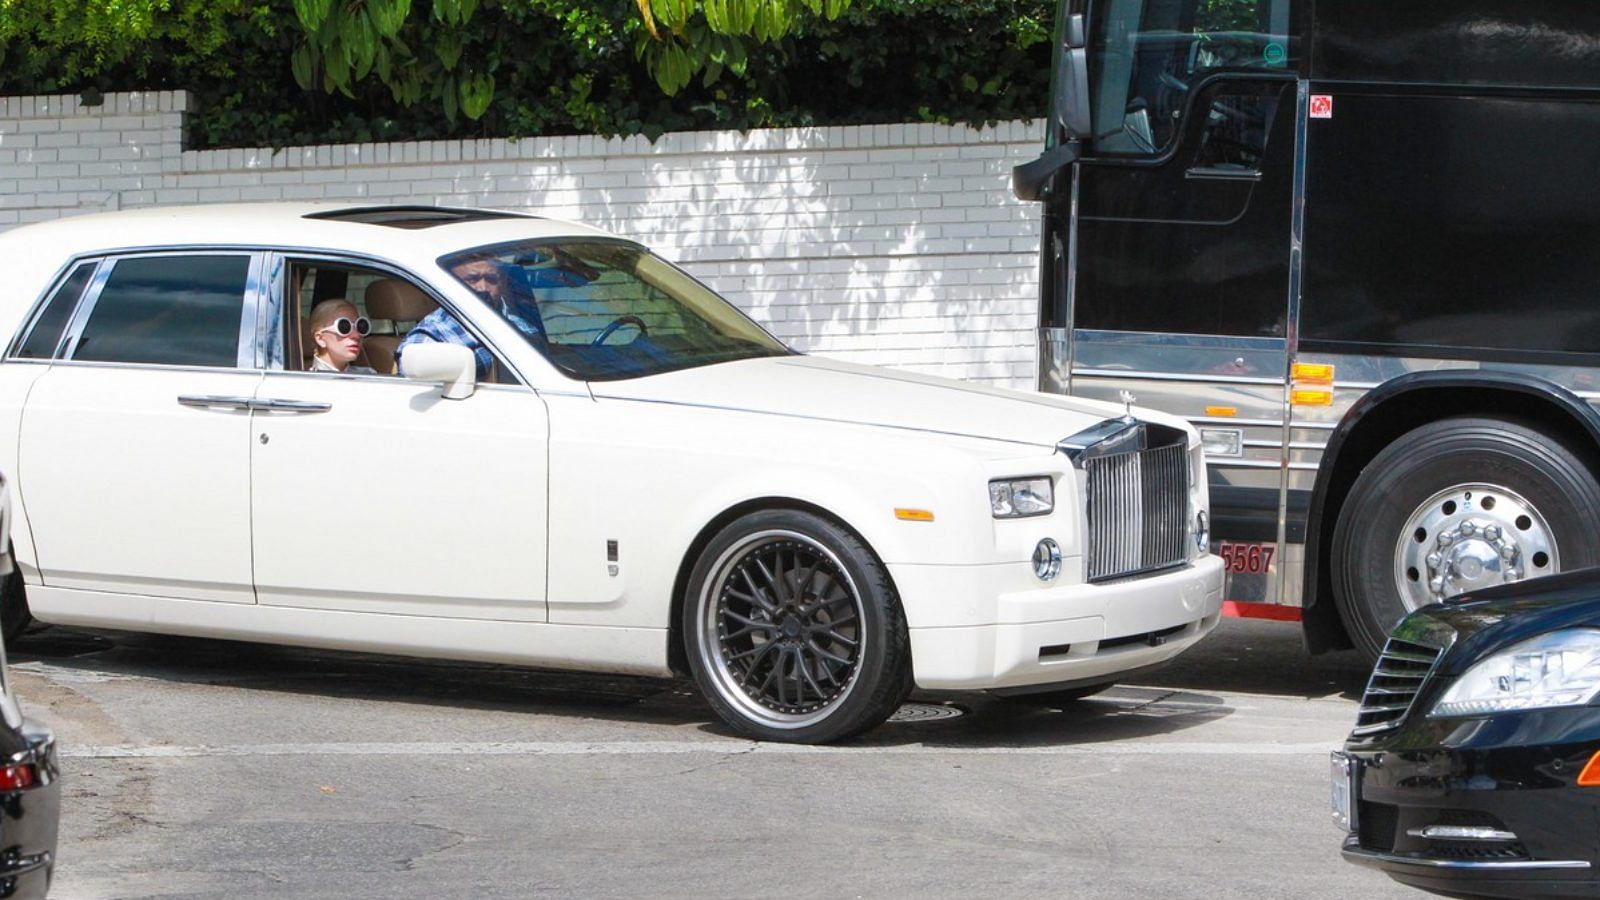  Lady Gaga's Rolls-Royce Phantom